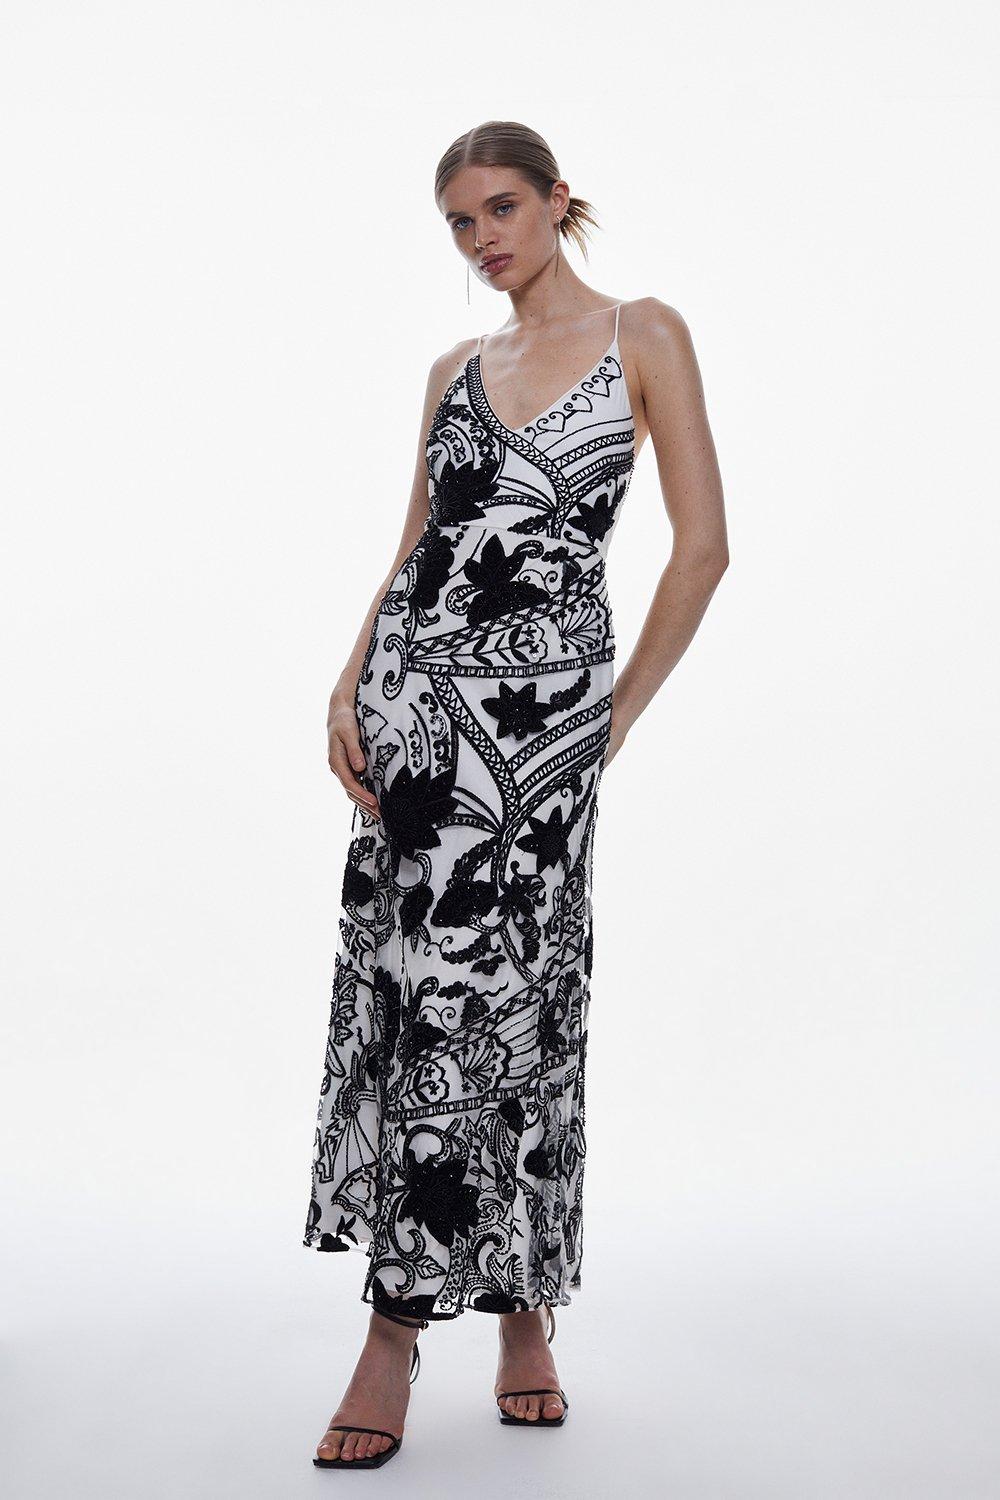 Embellished Slip Style Woven Midi Dress